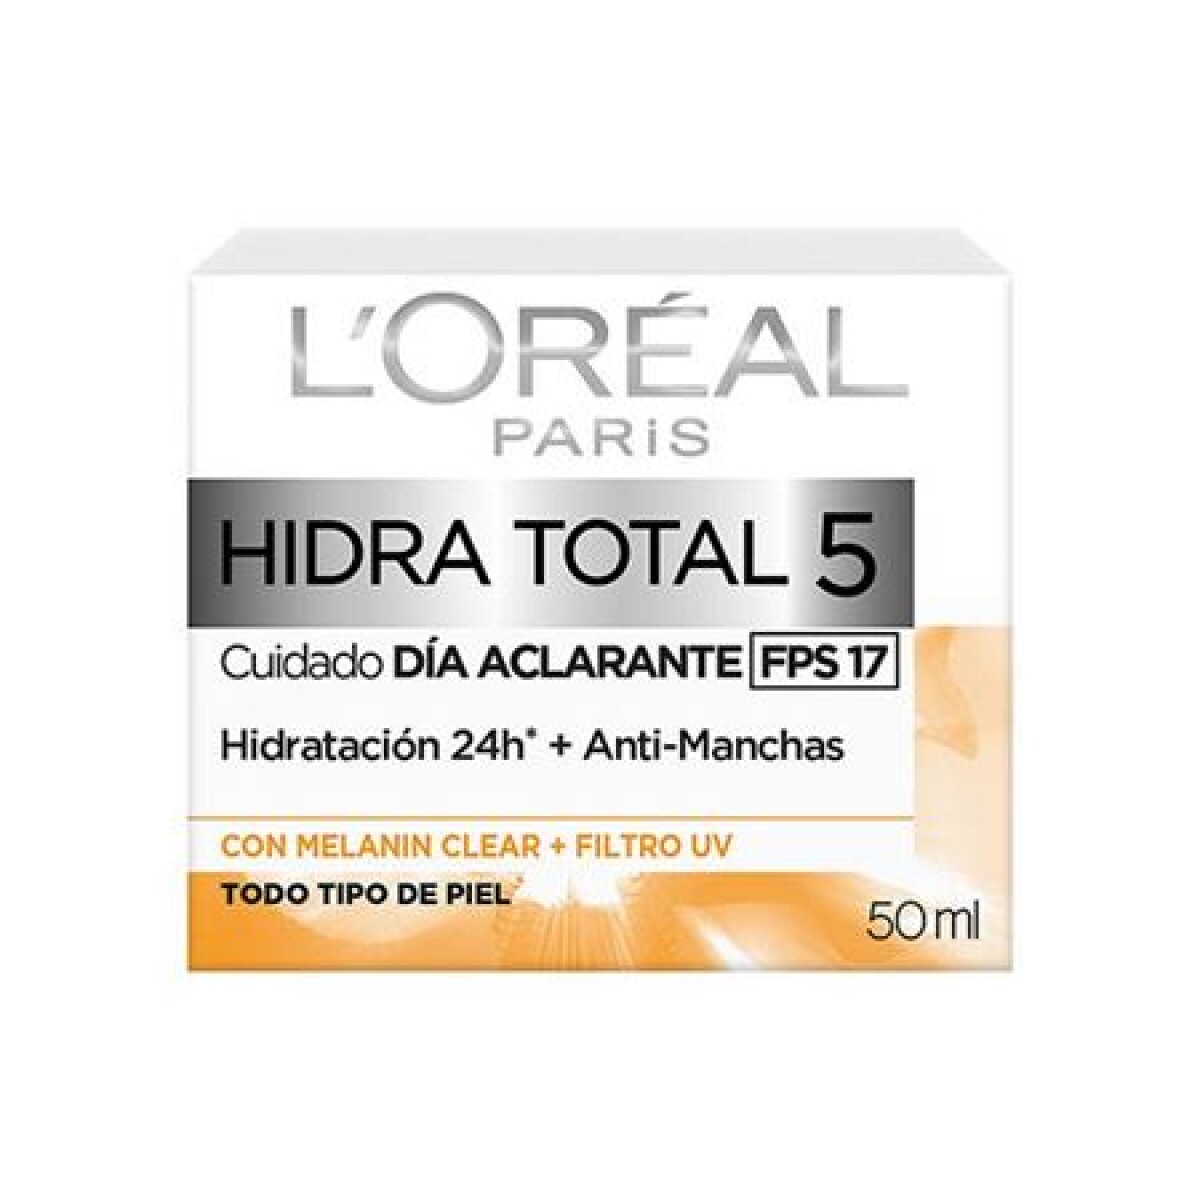 LOREAL CREMA HIDRA TOTAL5 ANTI MANCHAS FPS17 50ml 